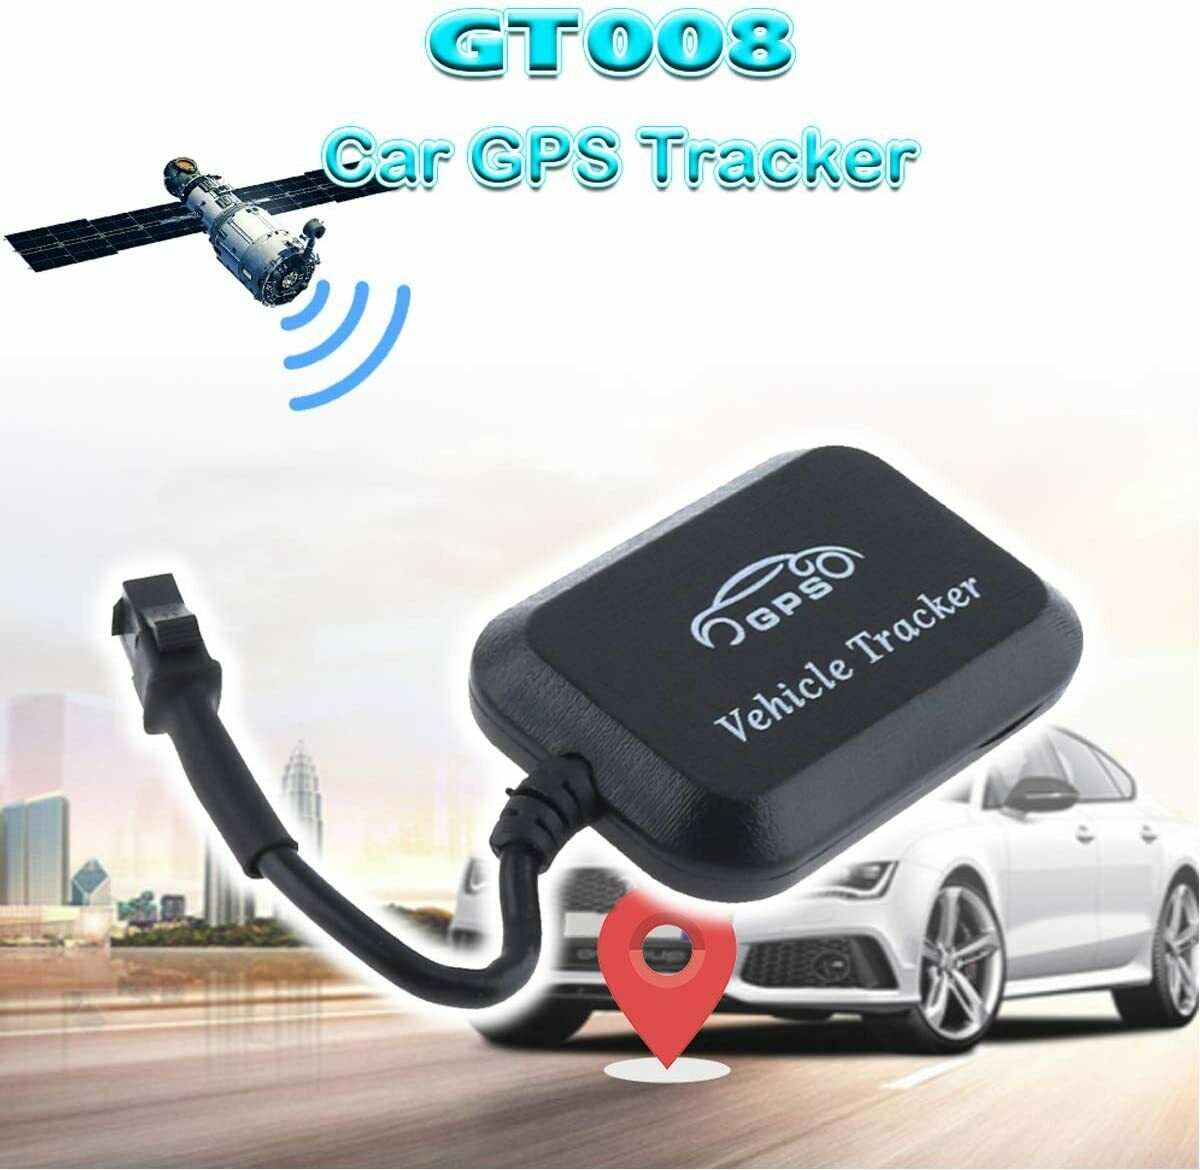 LOCALIZZATORE SATELLITARE AGPS GPS GSM ANTIFURTO TRACKER